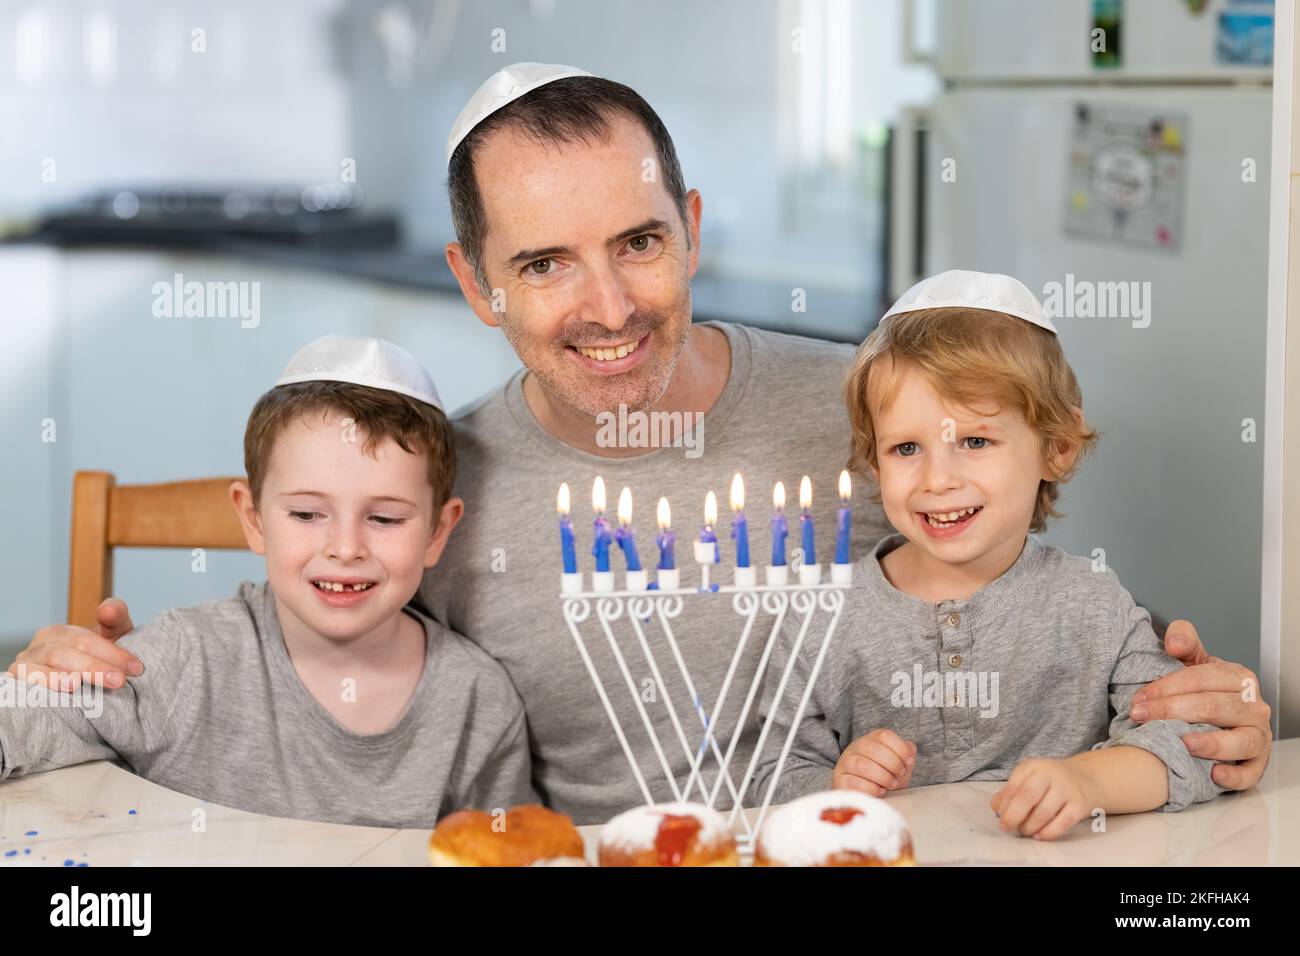 Vater und Söhne mit Menora feiern chanukka - jüdischer religiöser Feiertag Stockfoto